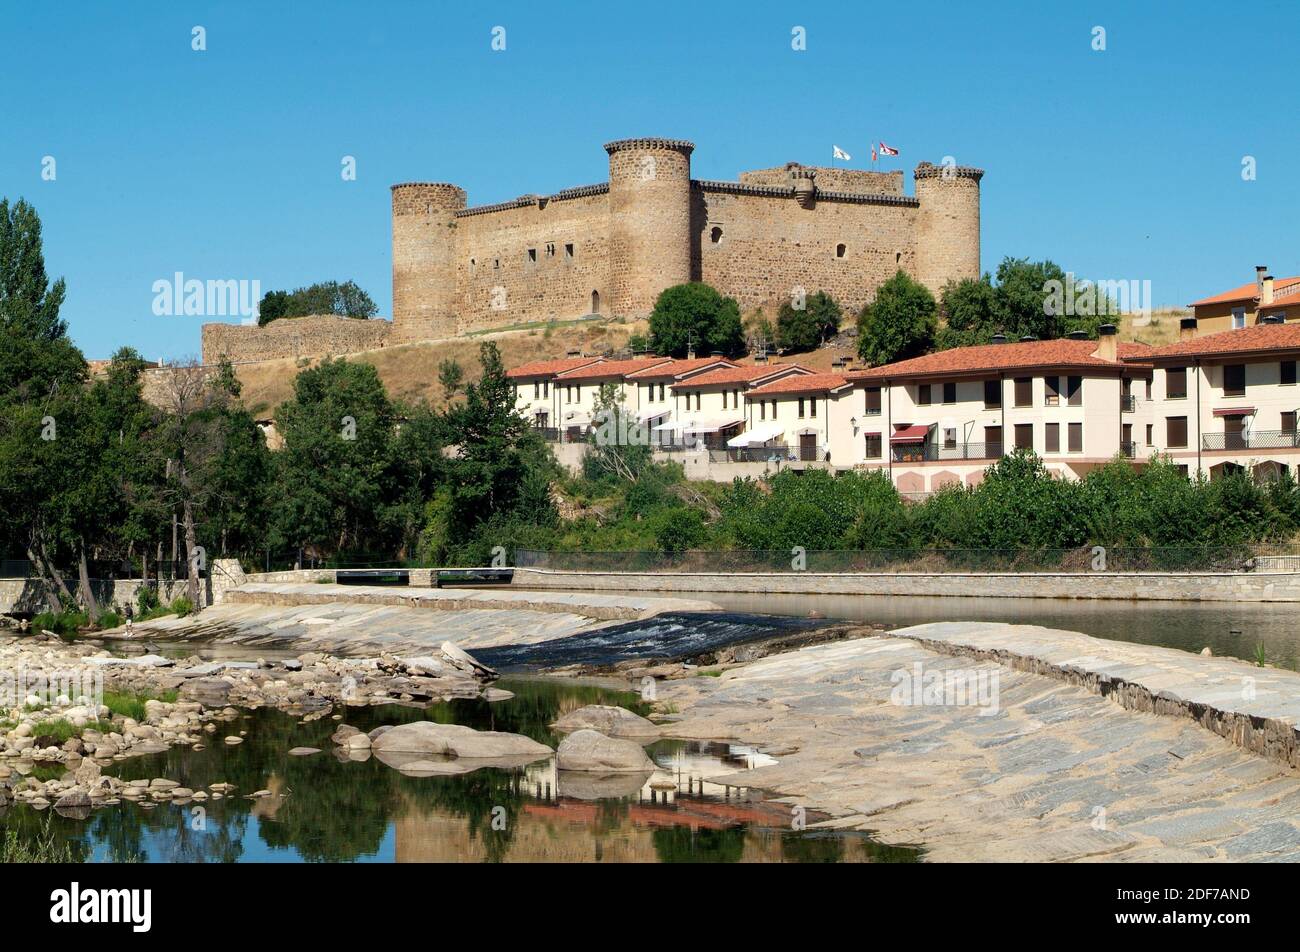 El Barco de Avila, town, castle (12-14th centuries) and Tormes River. Avila province, Castilla y Leon, Spain. Stock Photo